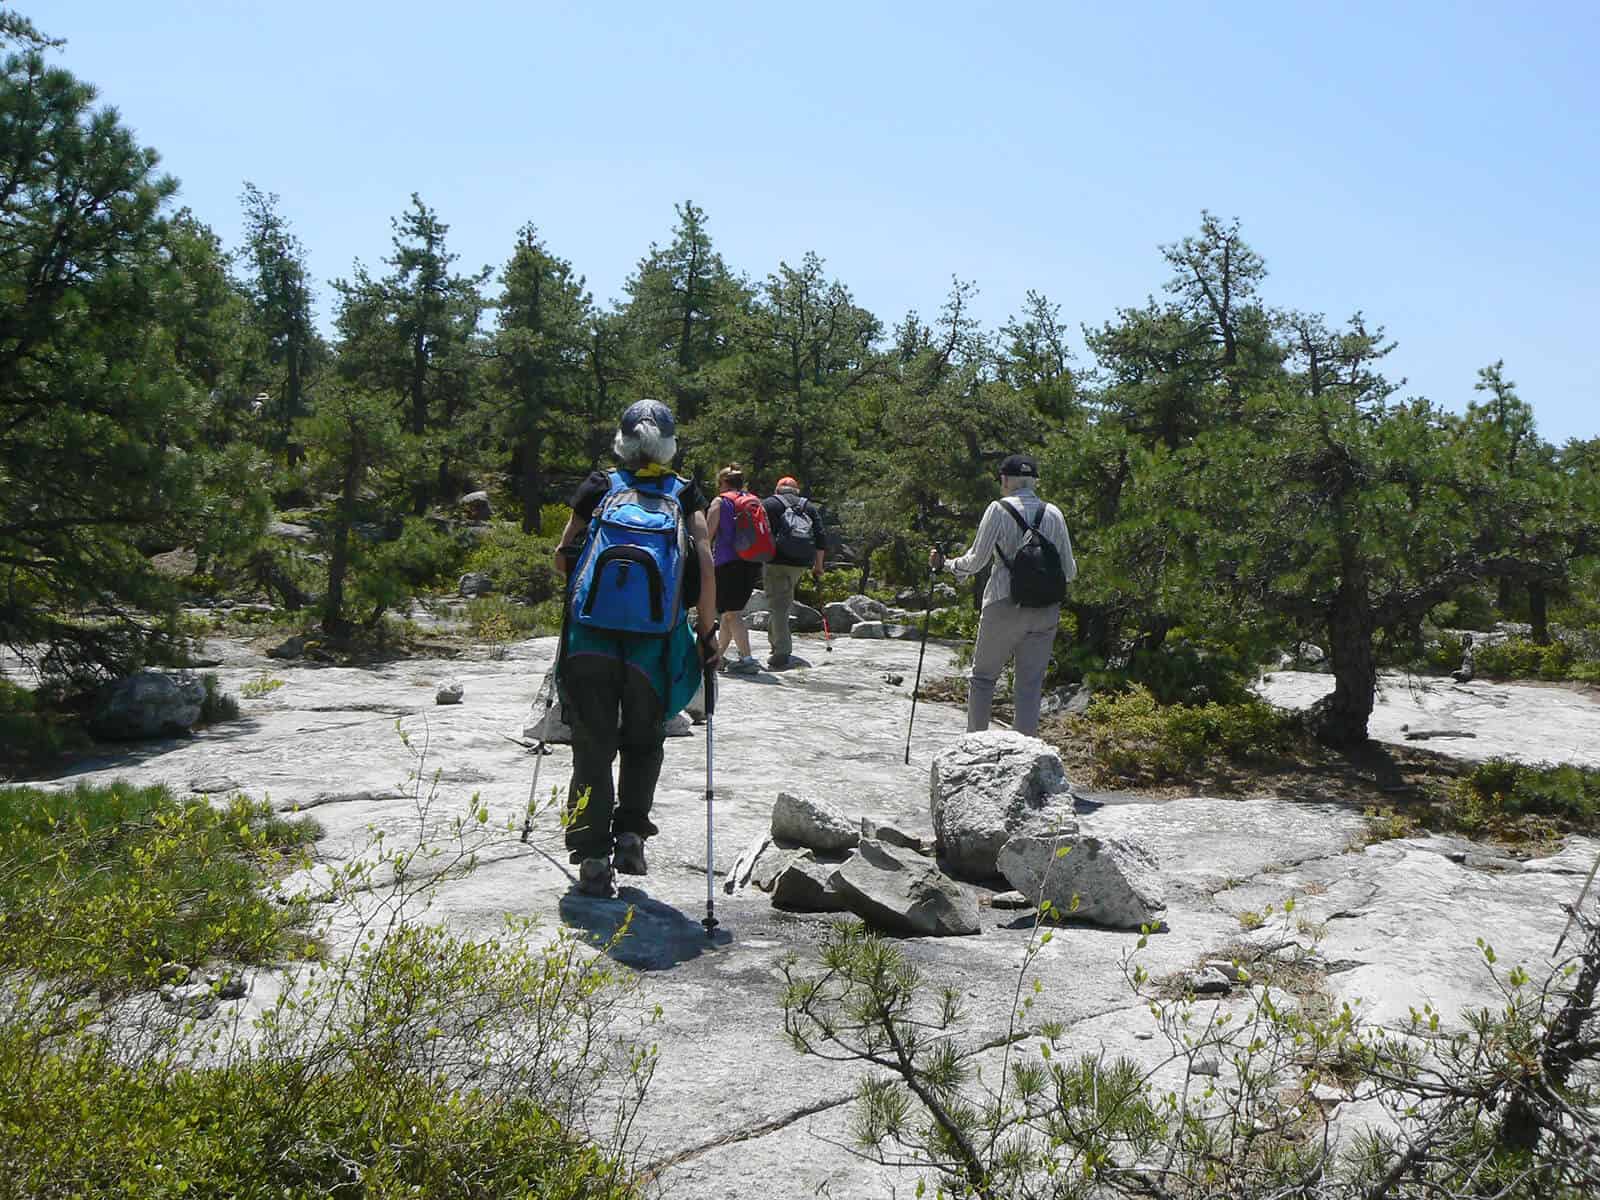 People hiking on rocks